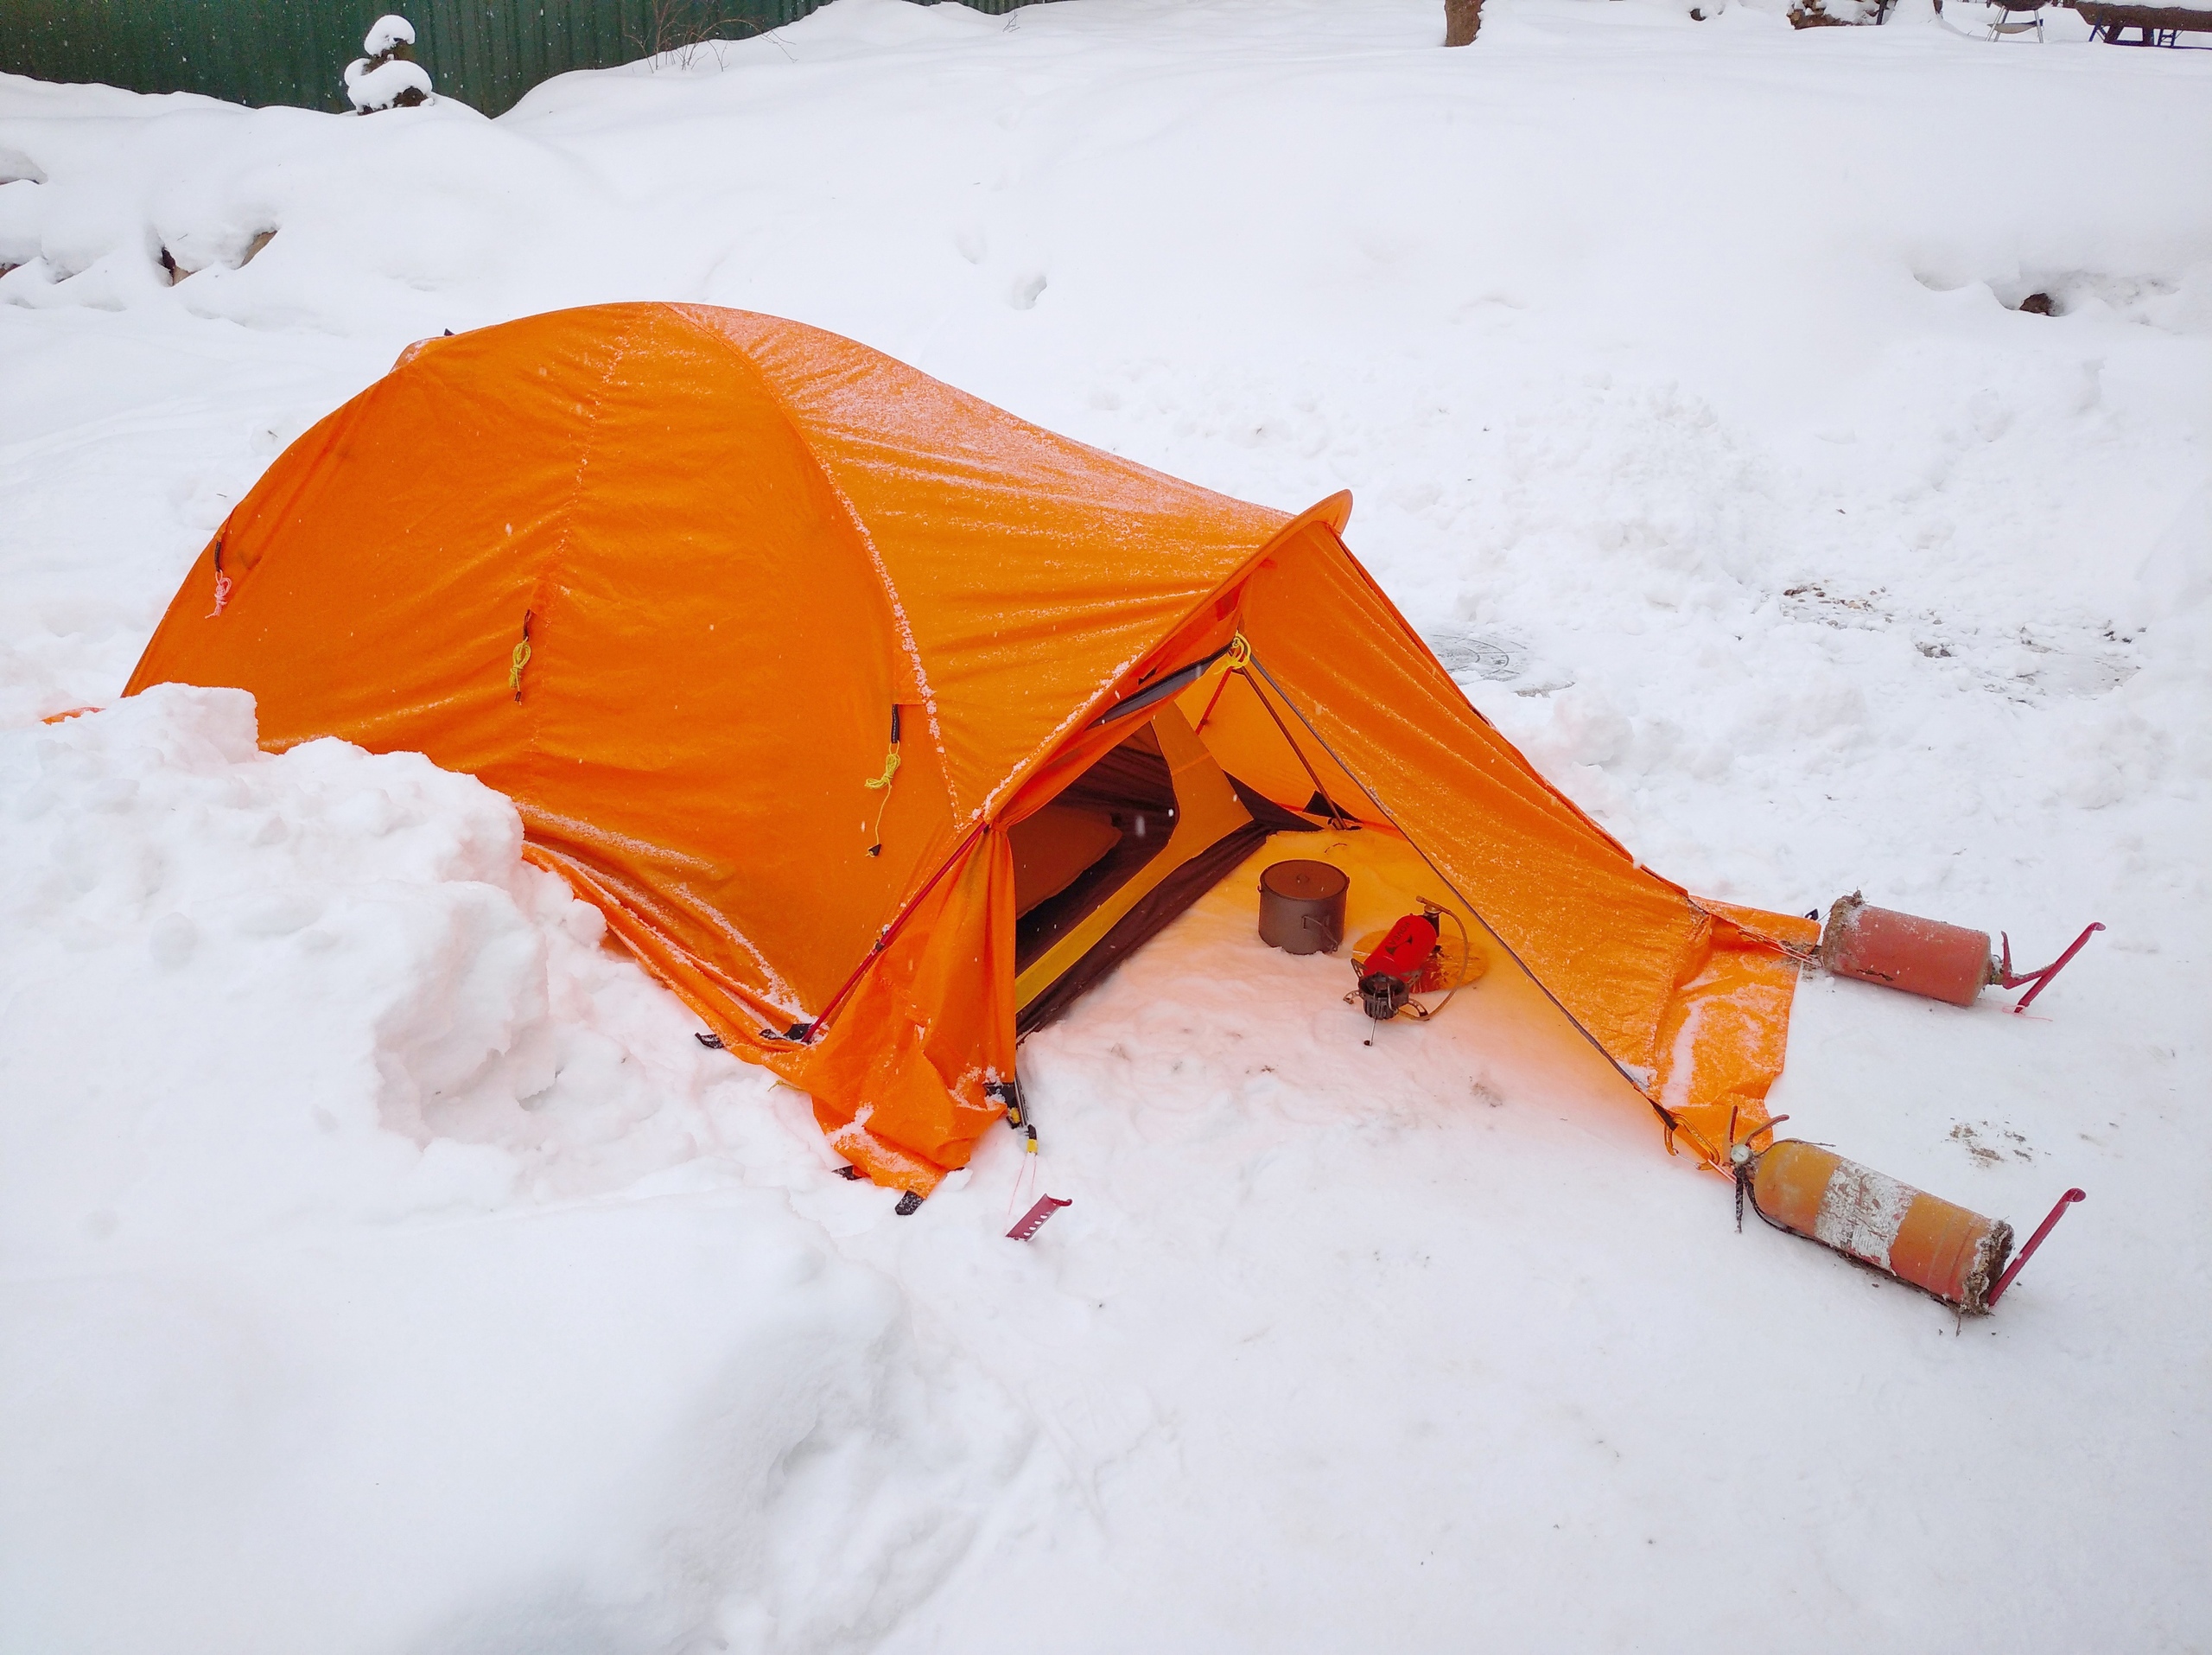 Ведущий эксперт по экстремальному снаряжению протестирует в Арктике русскую палатку